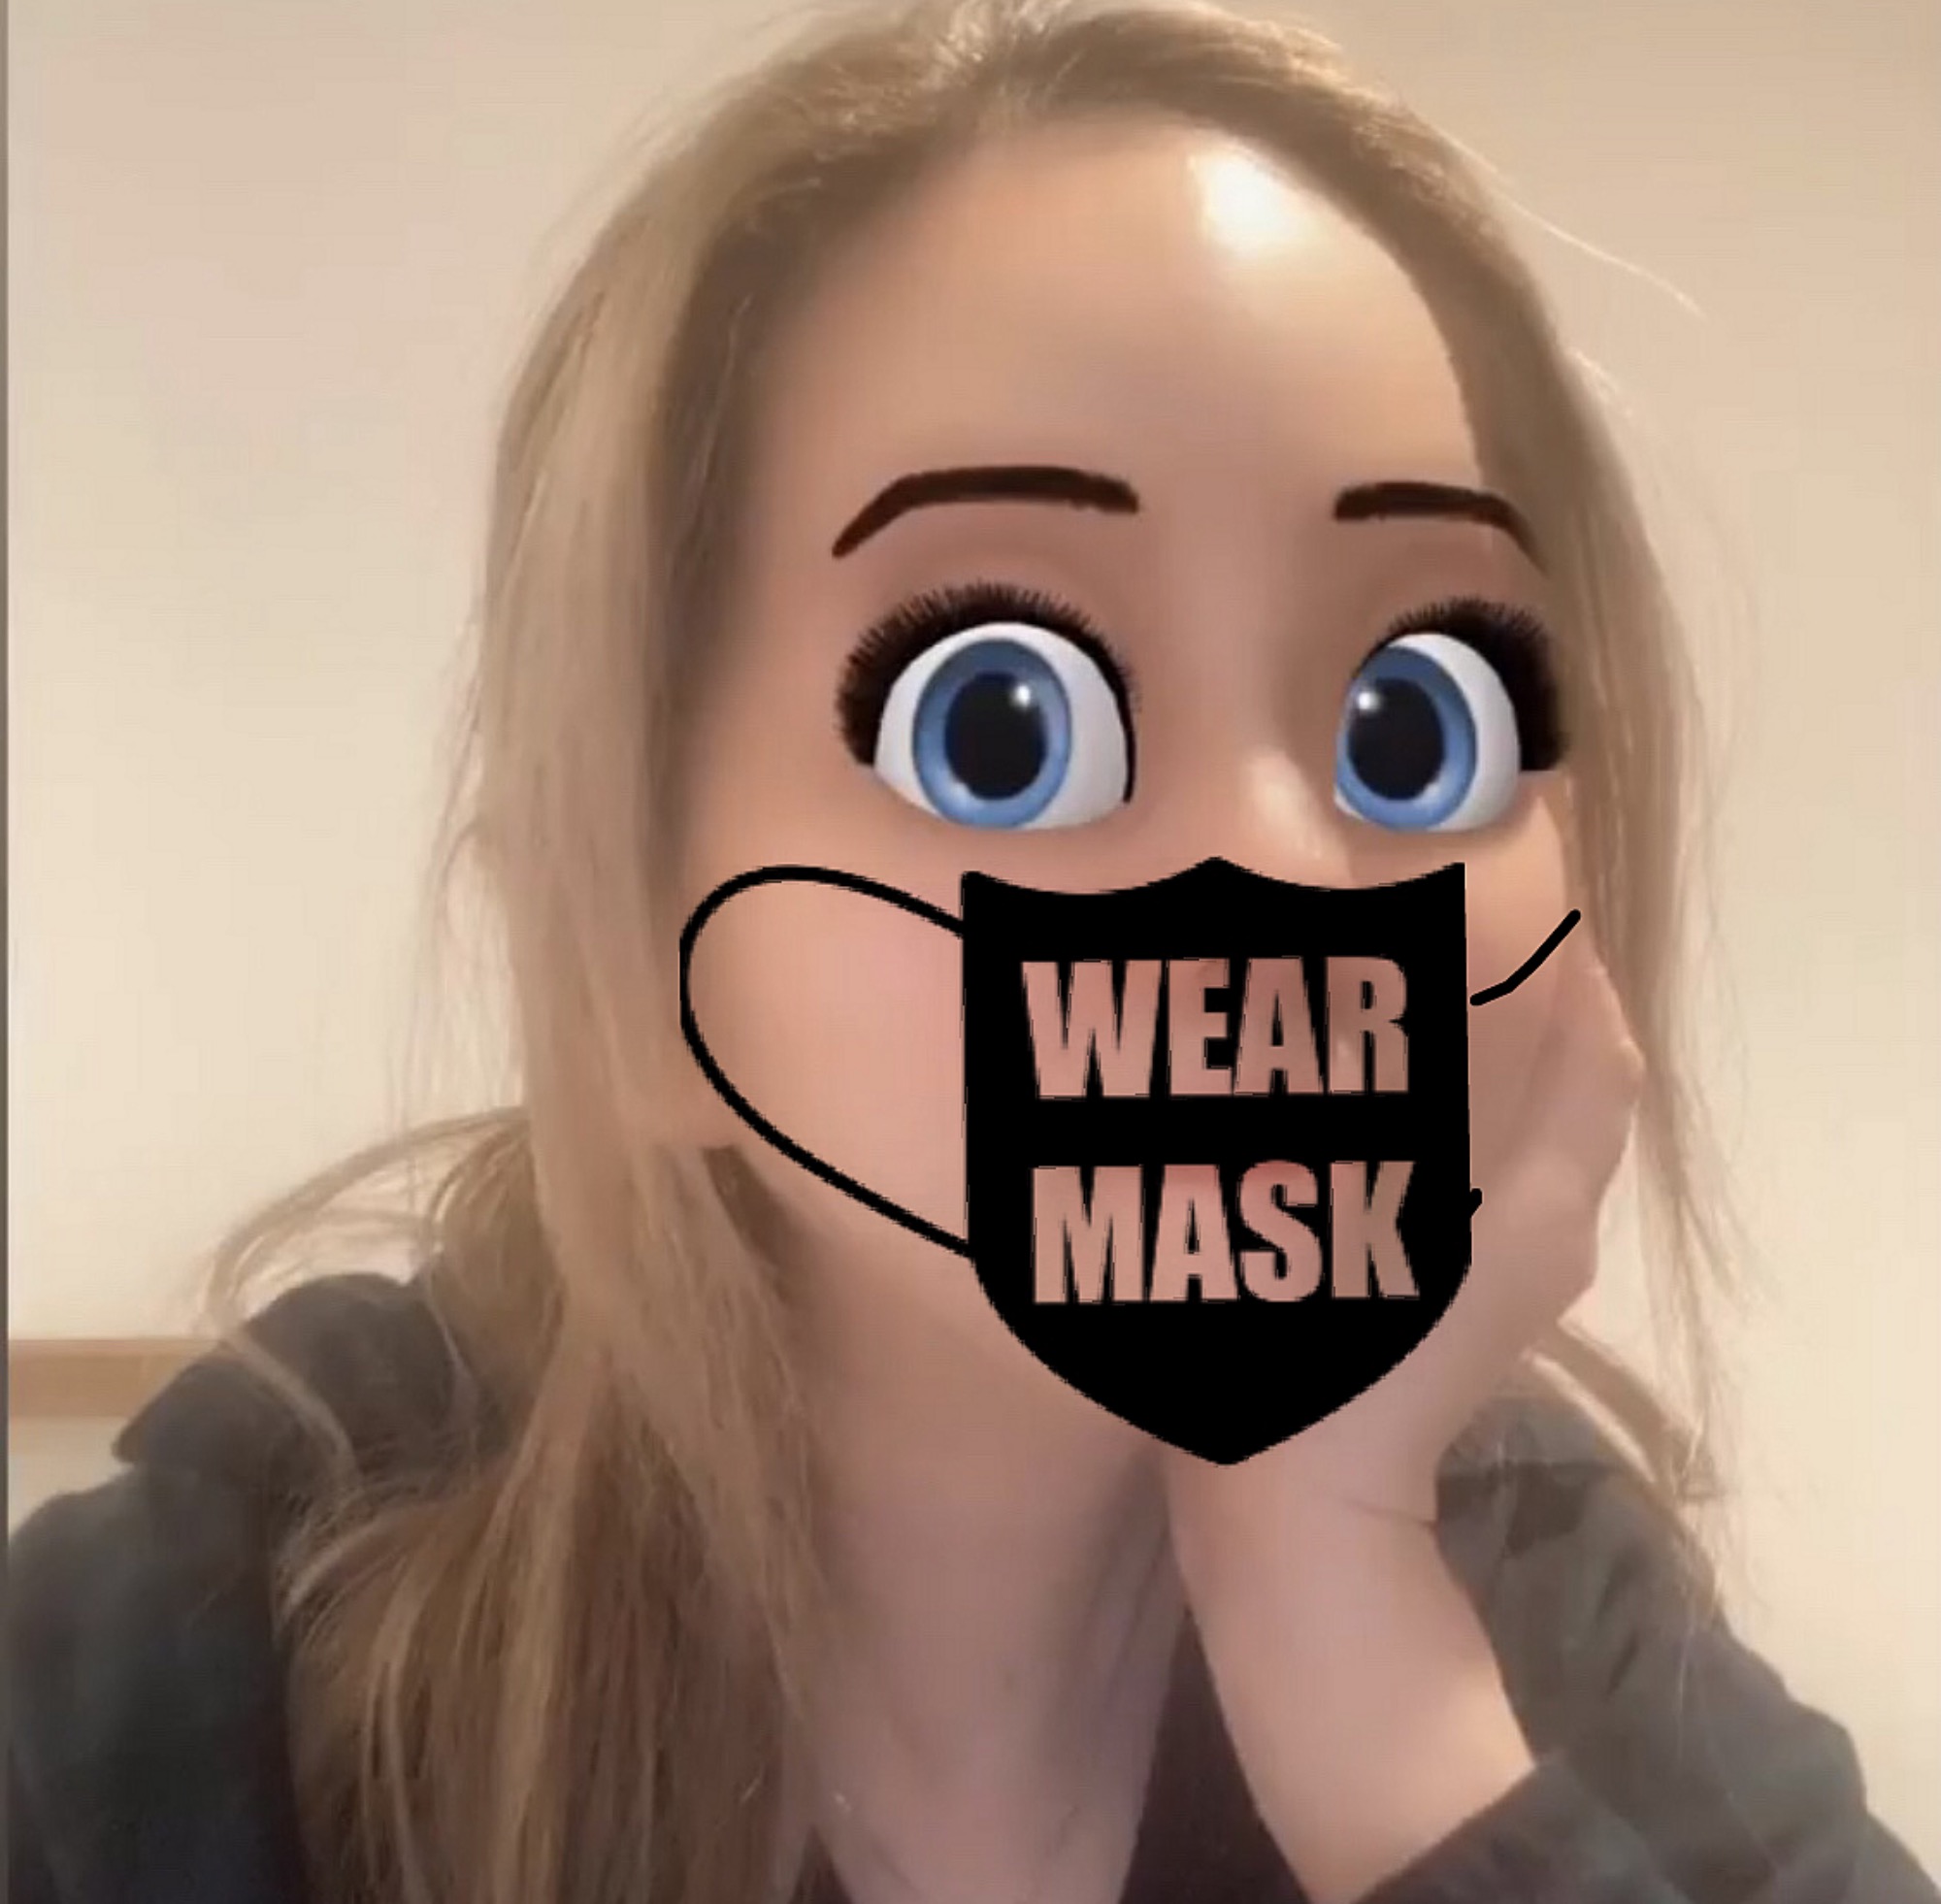 Wear Mask